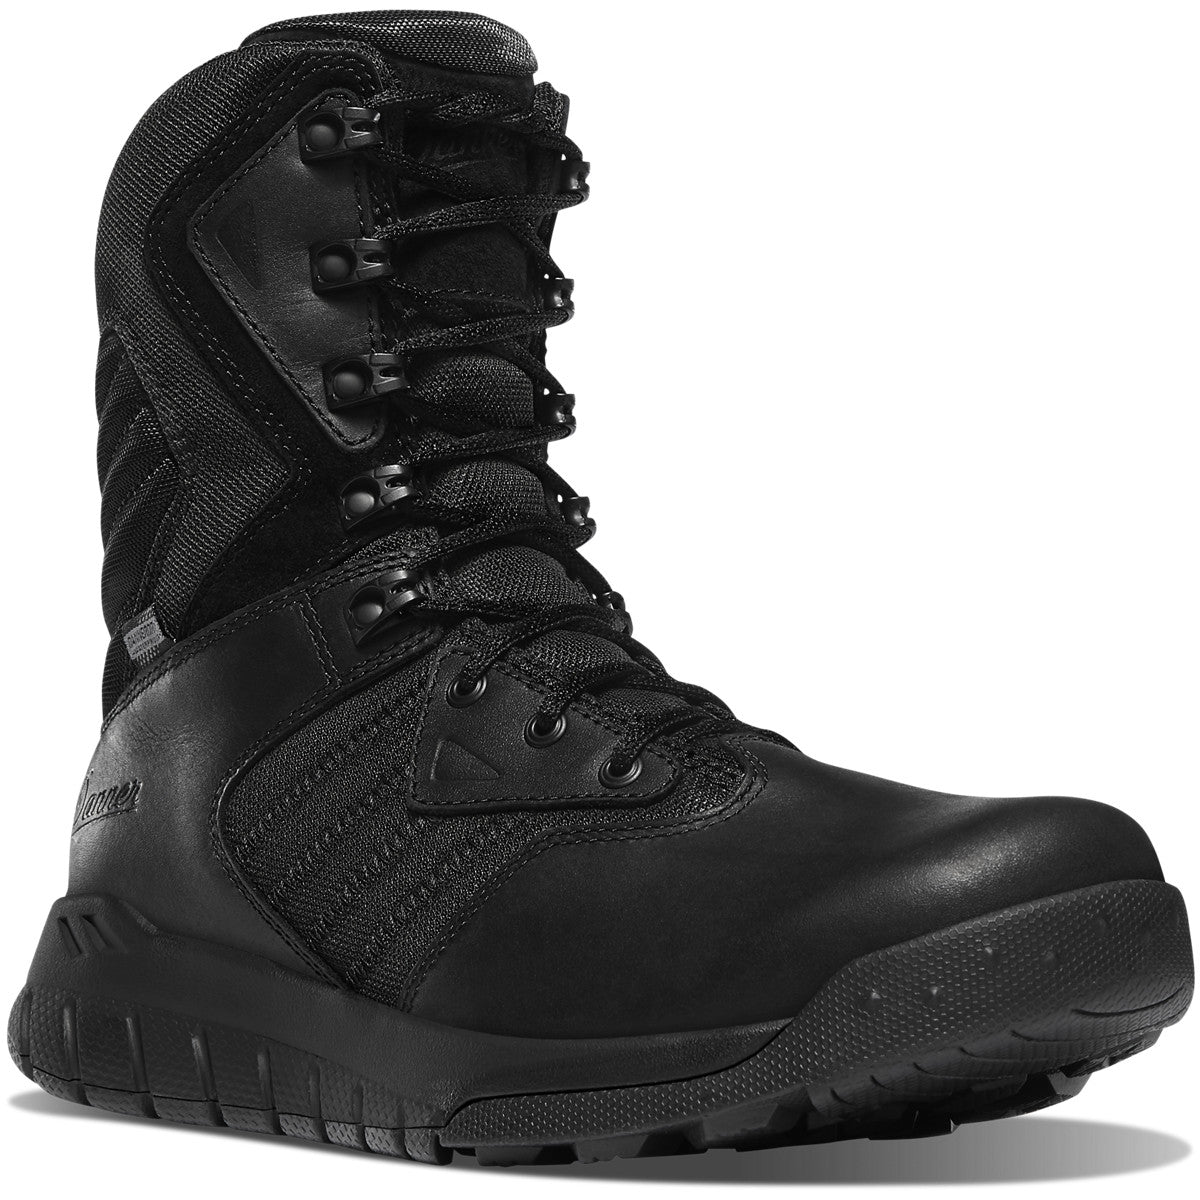 Danner Men's Instinct tactical 8" WP Side Zip Ins Work Boot- Black - 25331 6 / Medium / Black - Overlook Boots